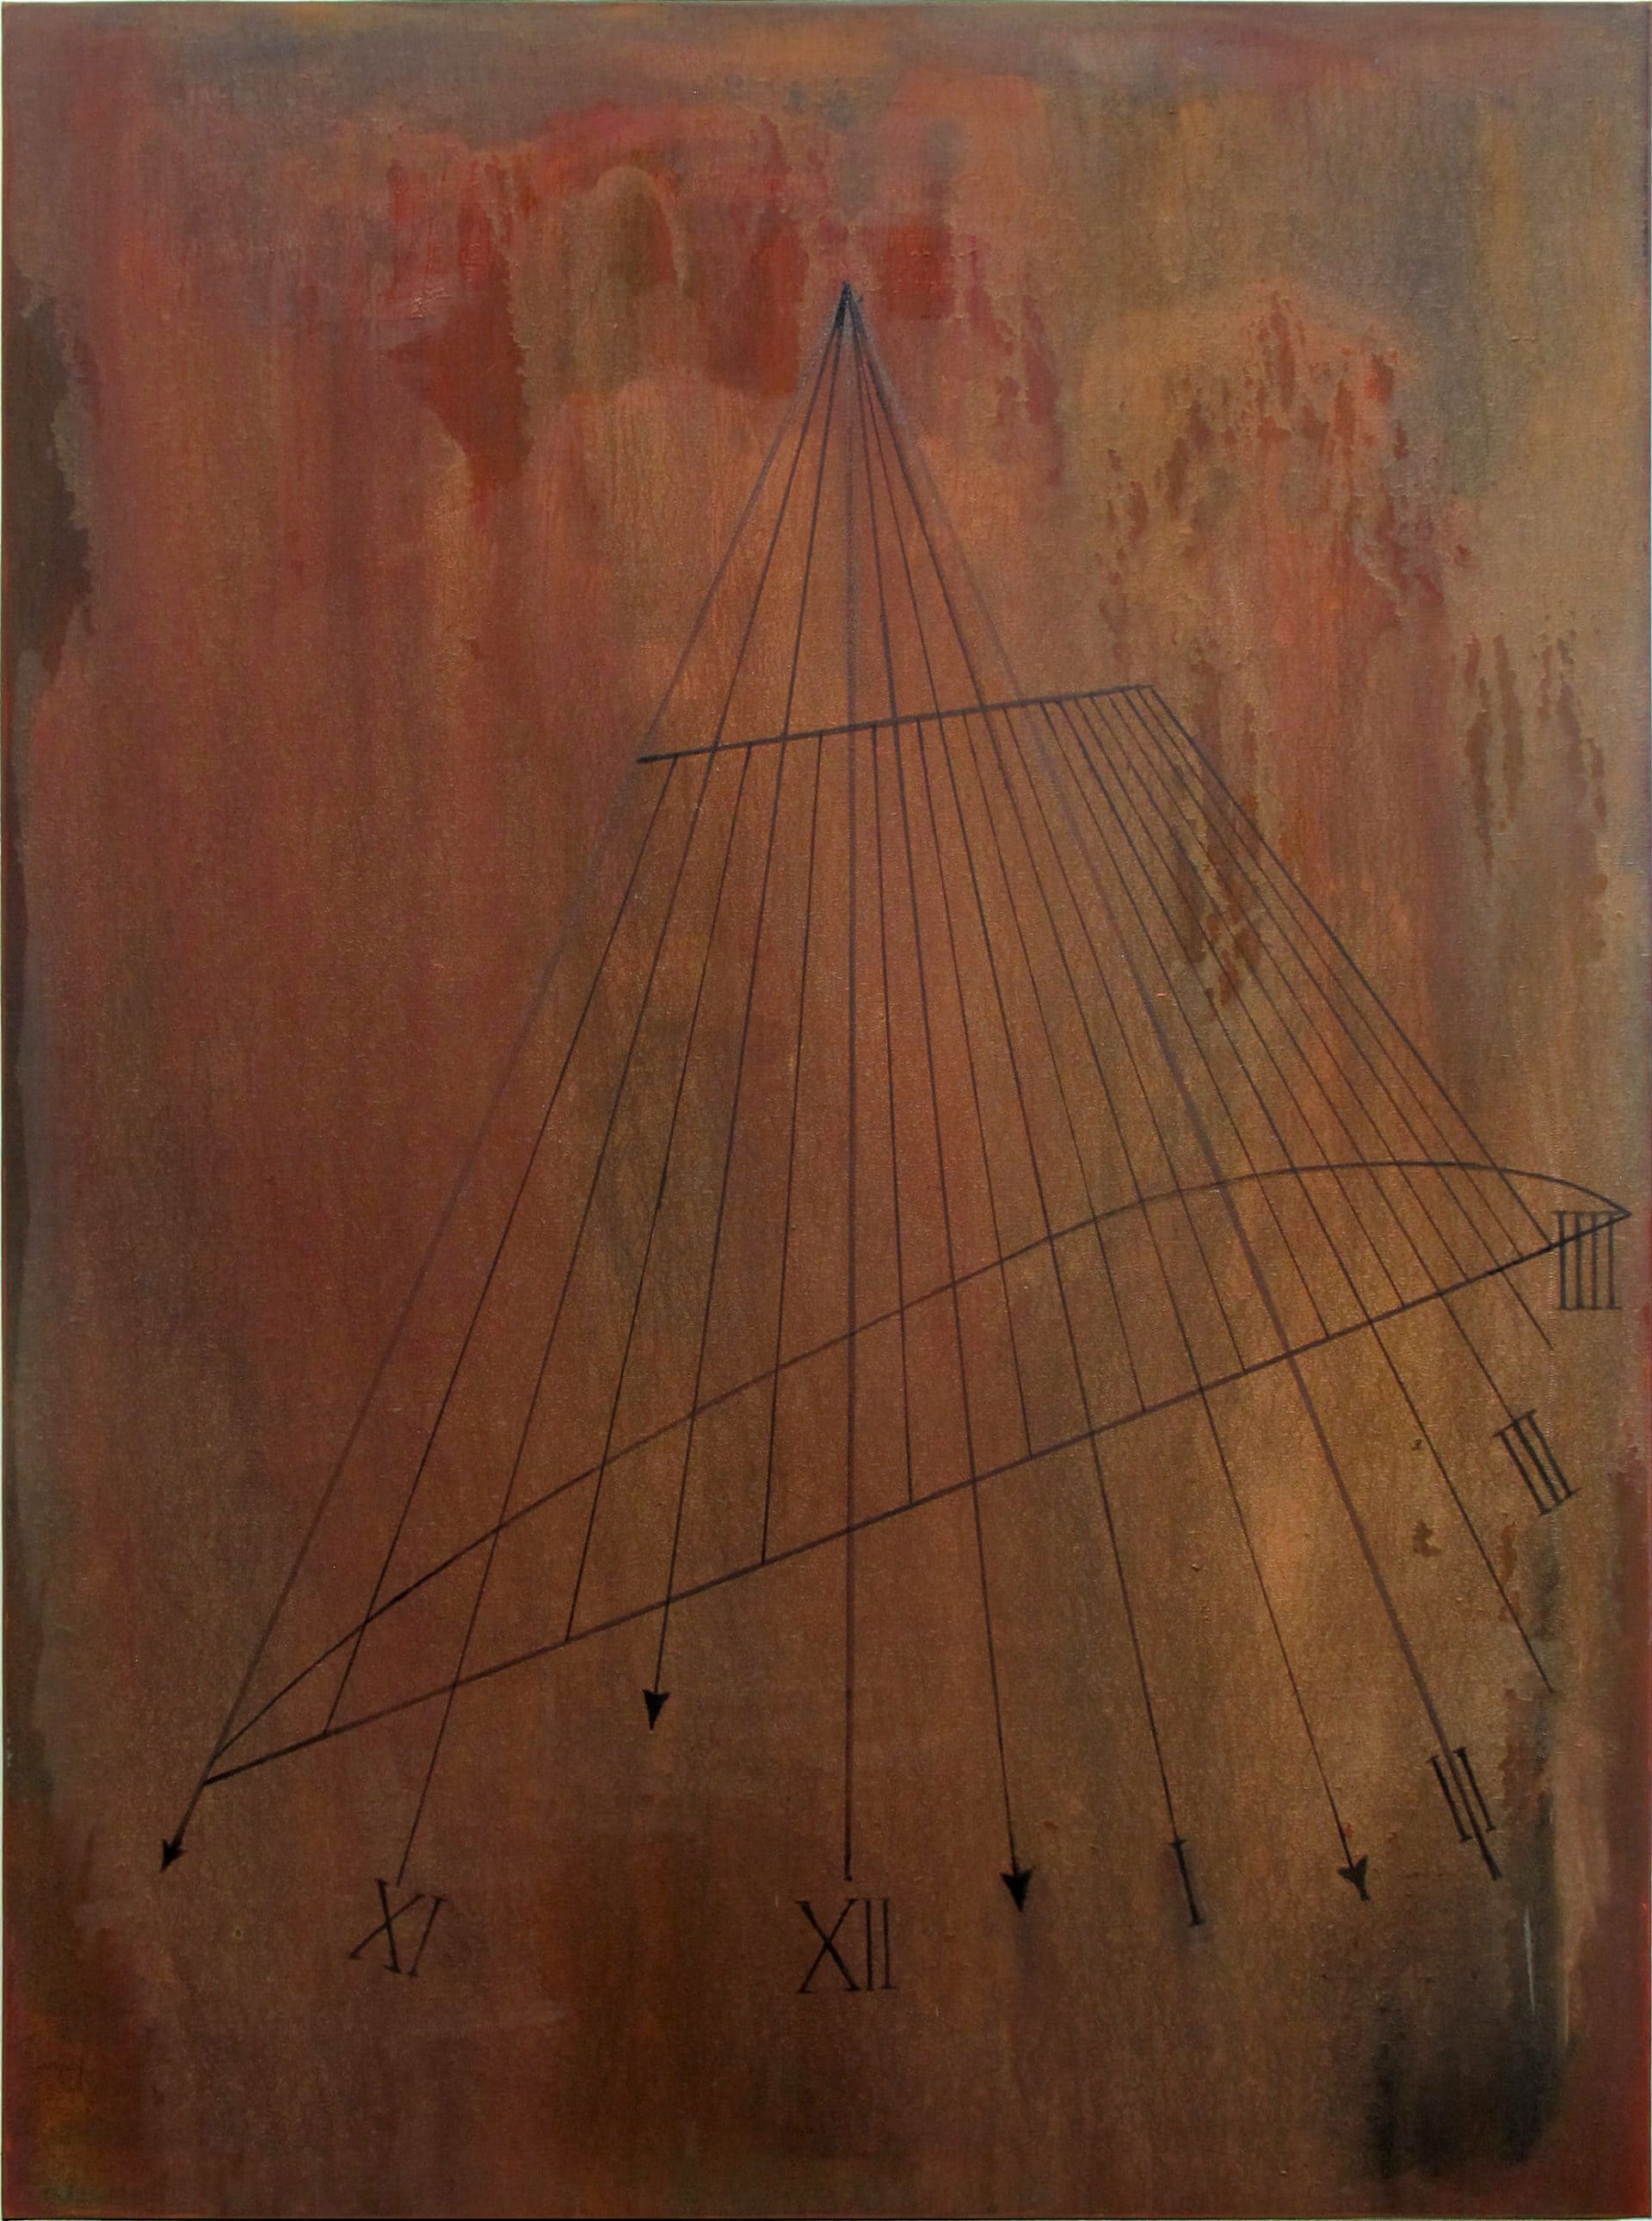 Benoît Blanchard, Heure de nuit, huile sur toile, 116 x 89 cm, 2019